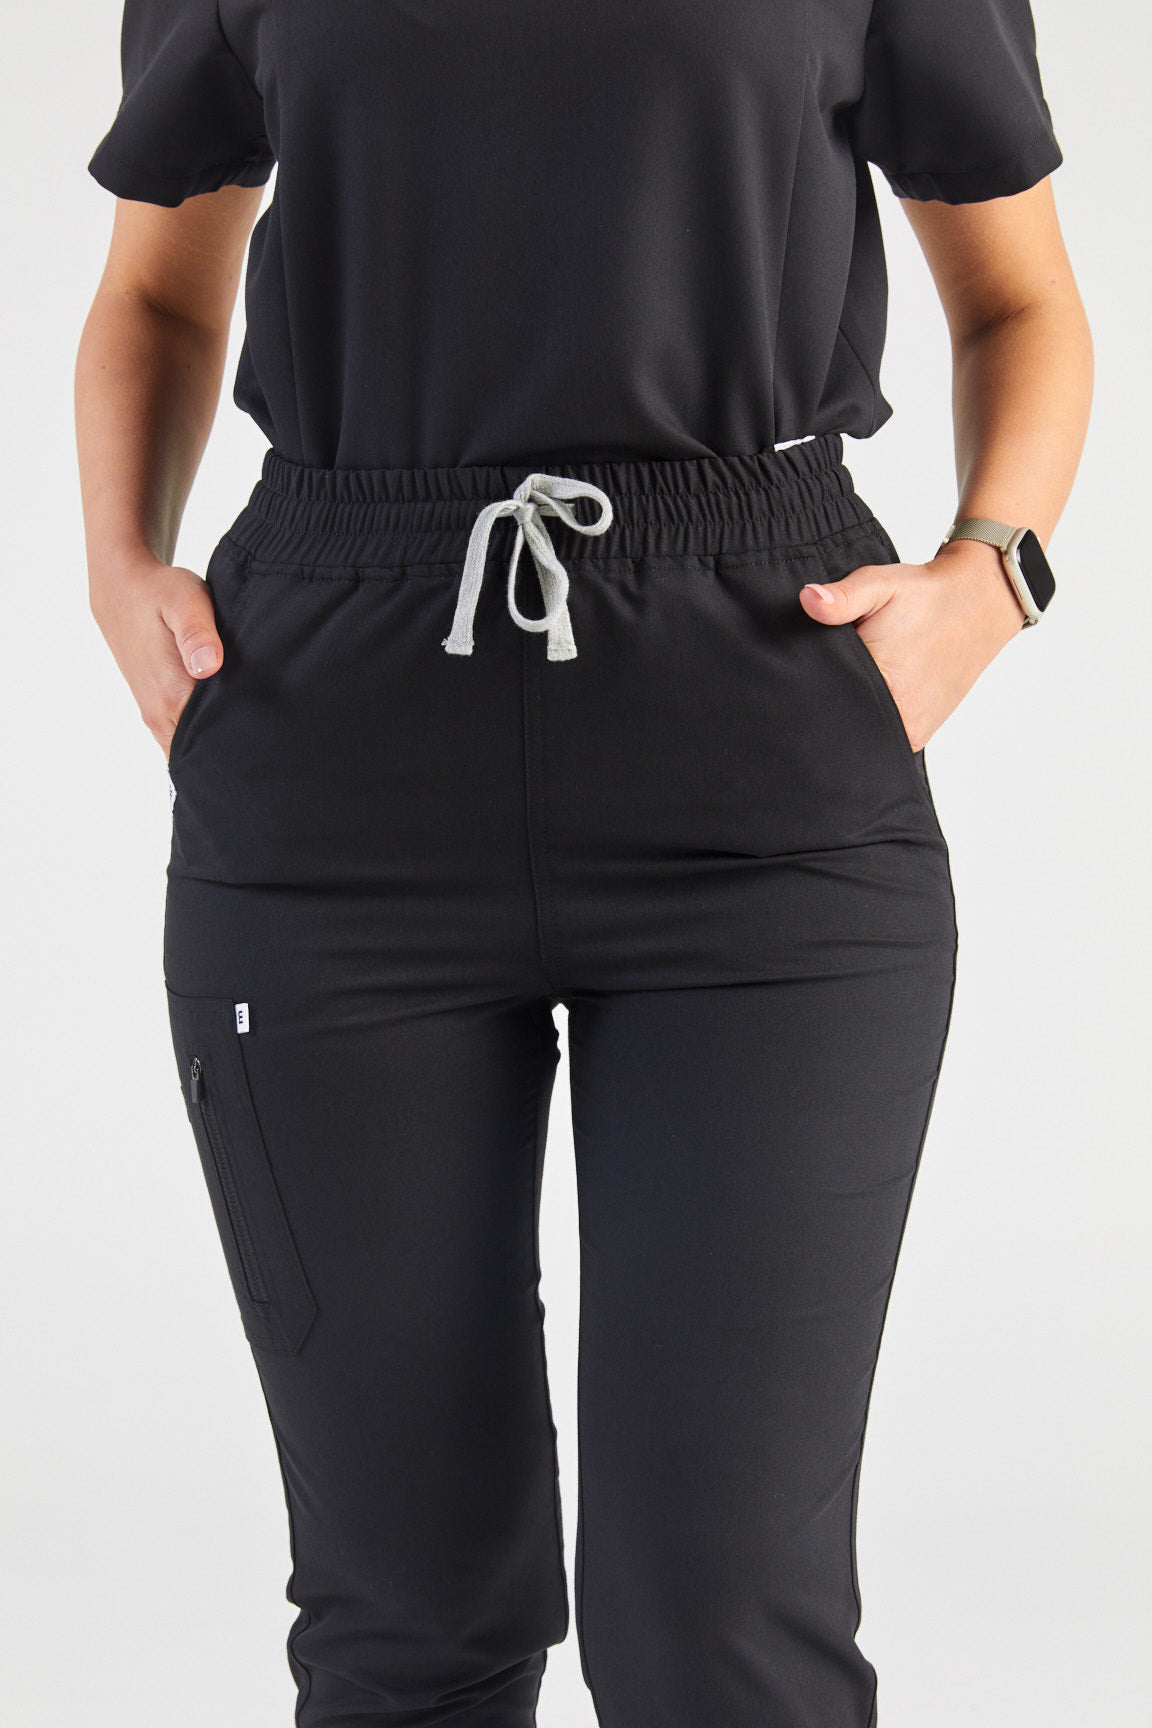 Women's Melrose Multi-Pocket Jogger Scrub Pants - Black